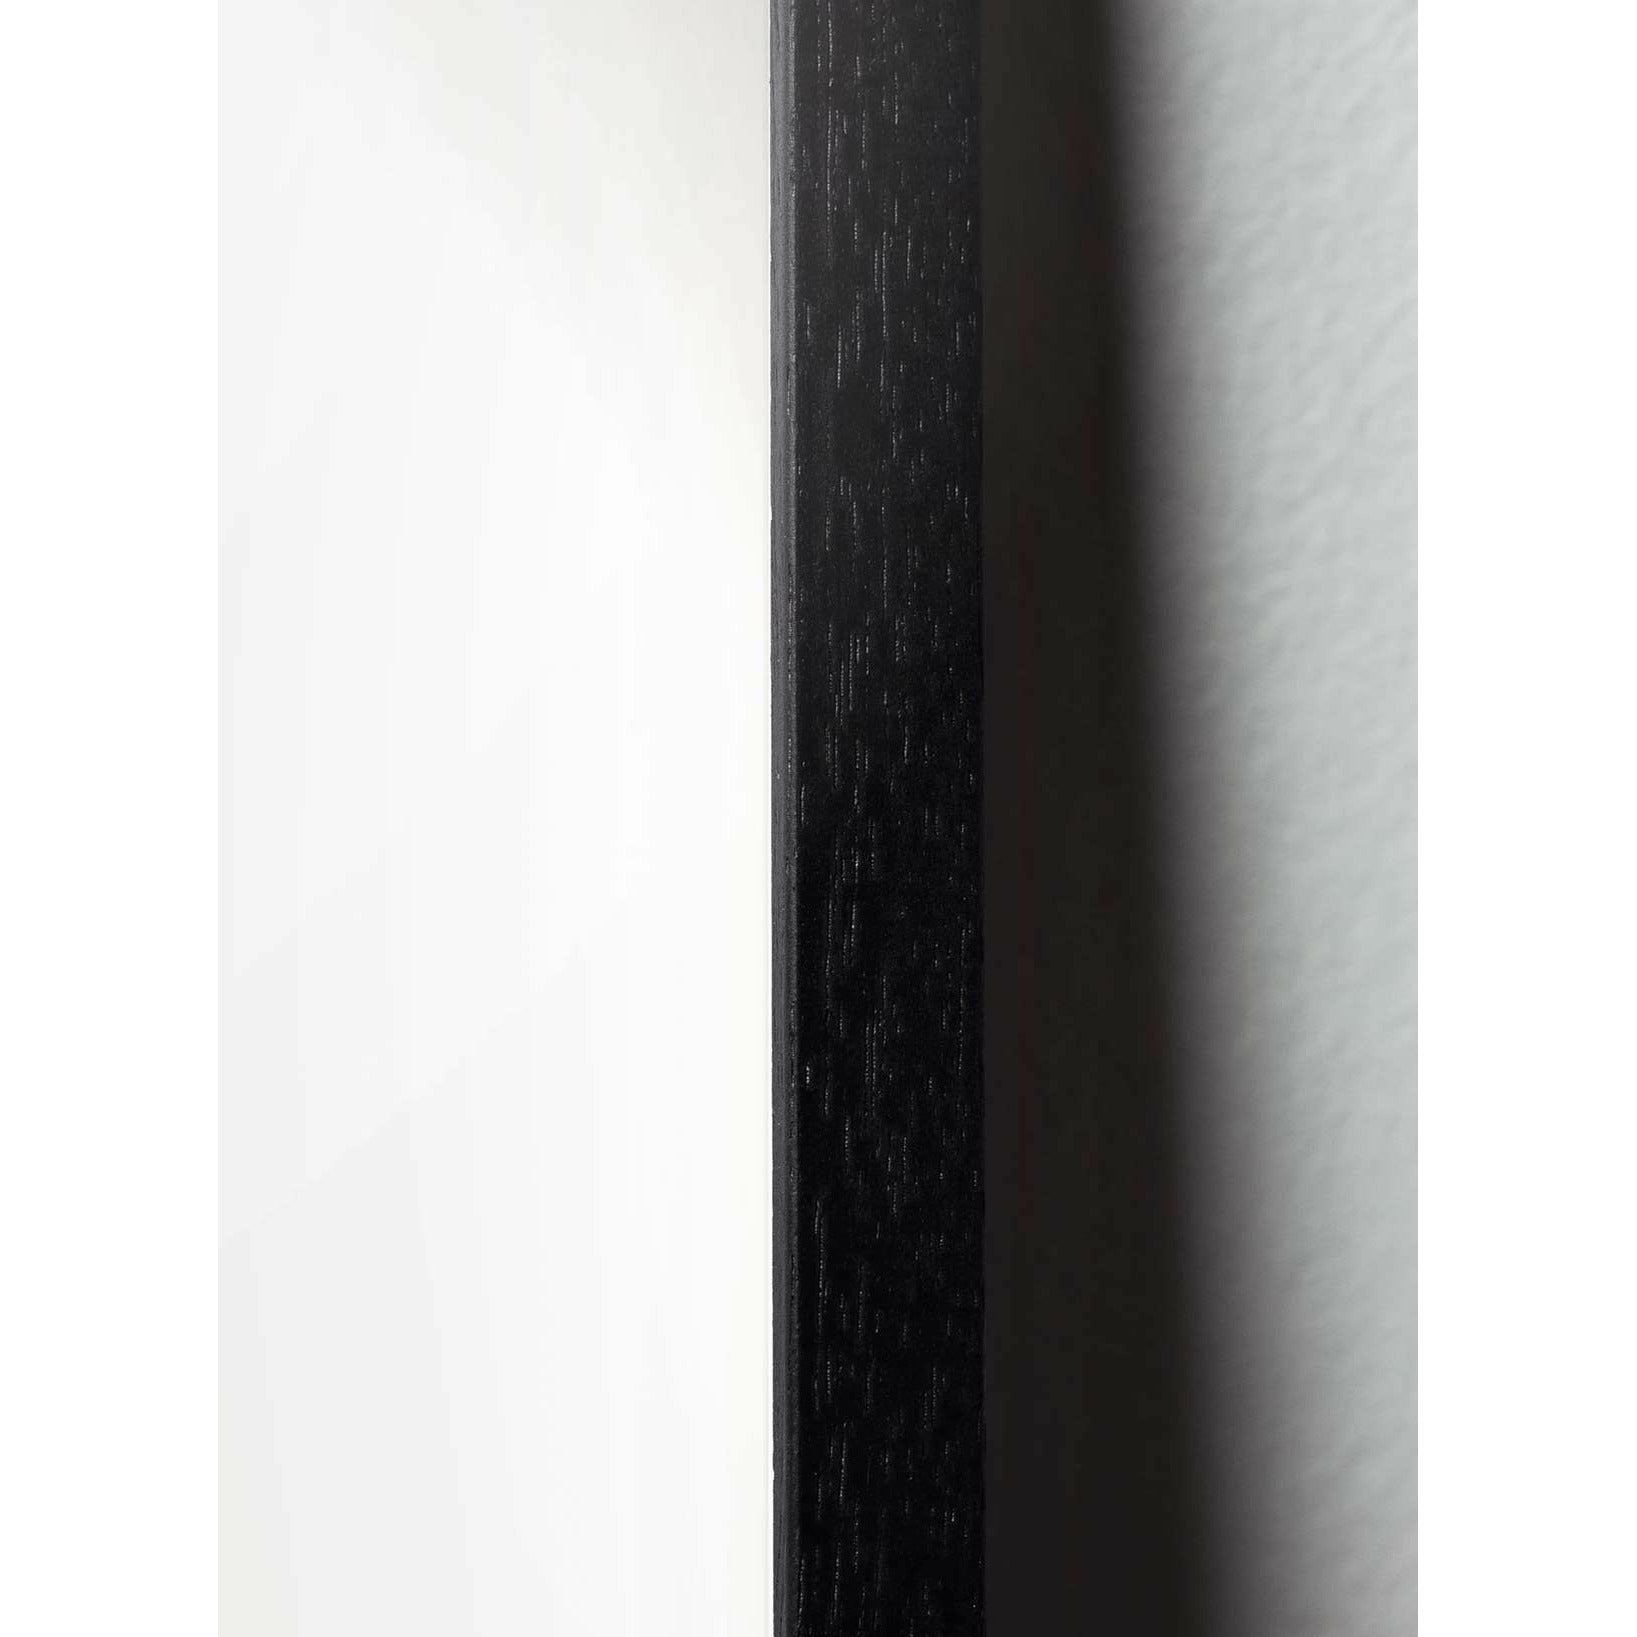 Klasický plakát s labuťovým plakátem, rám v černém lakovaném dřevu 50x70 cm, ropné modré pozadí